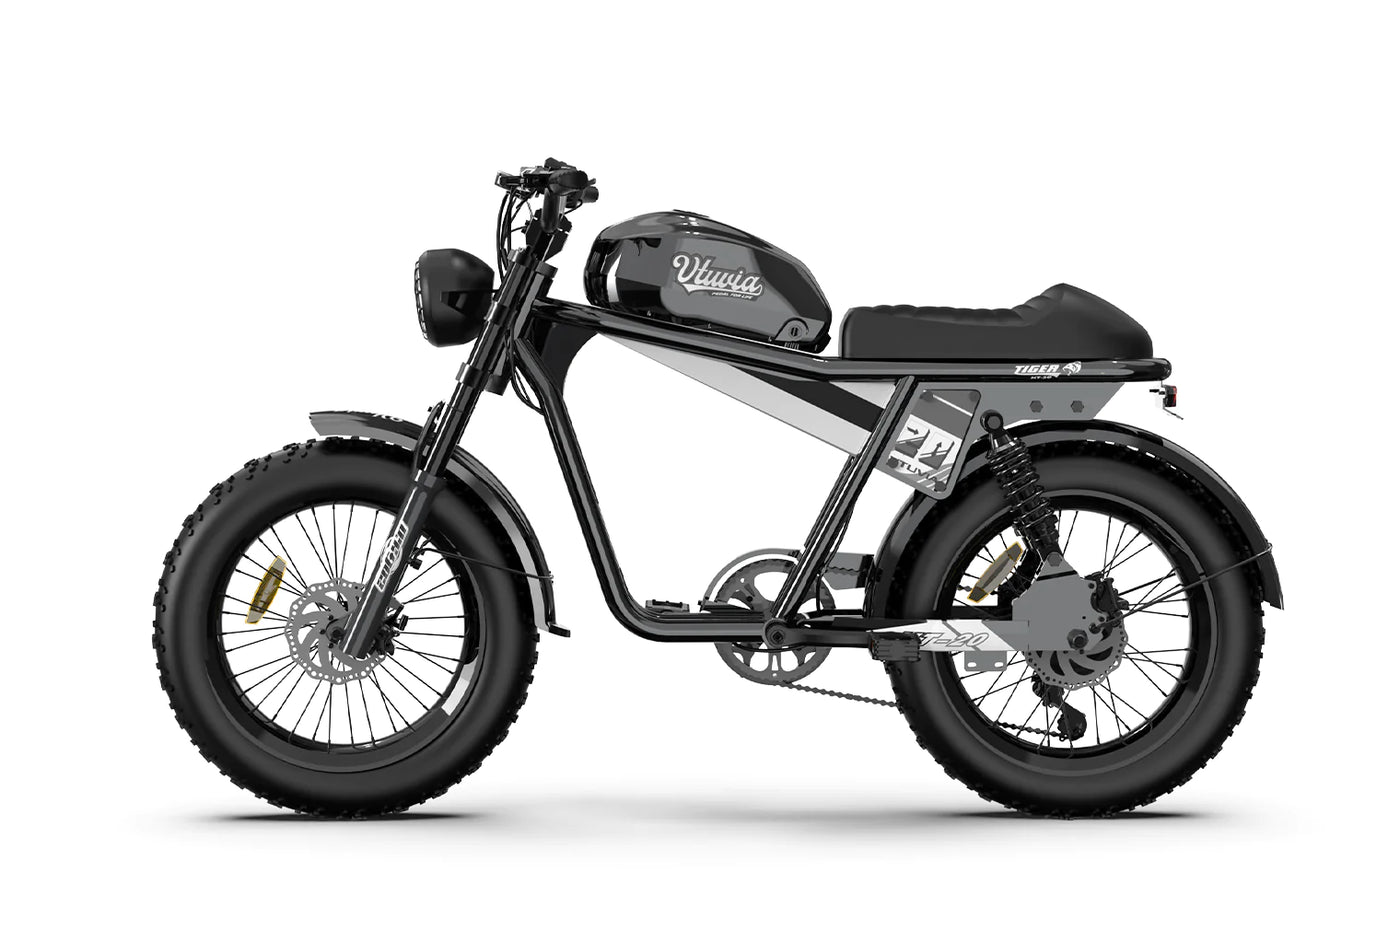 New Vtuvia Tiger - Super Cool Retro '73 Mini Motorcycle